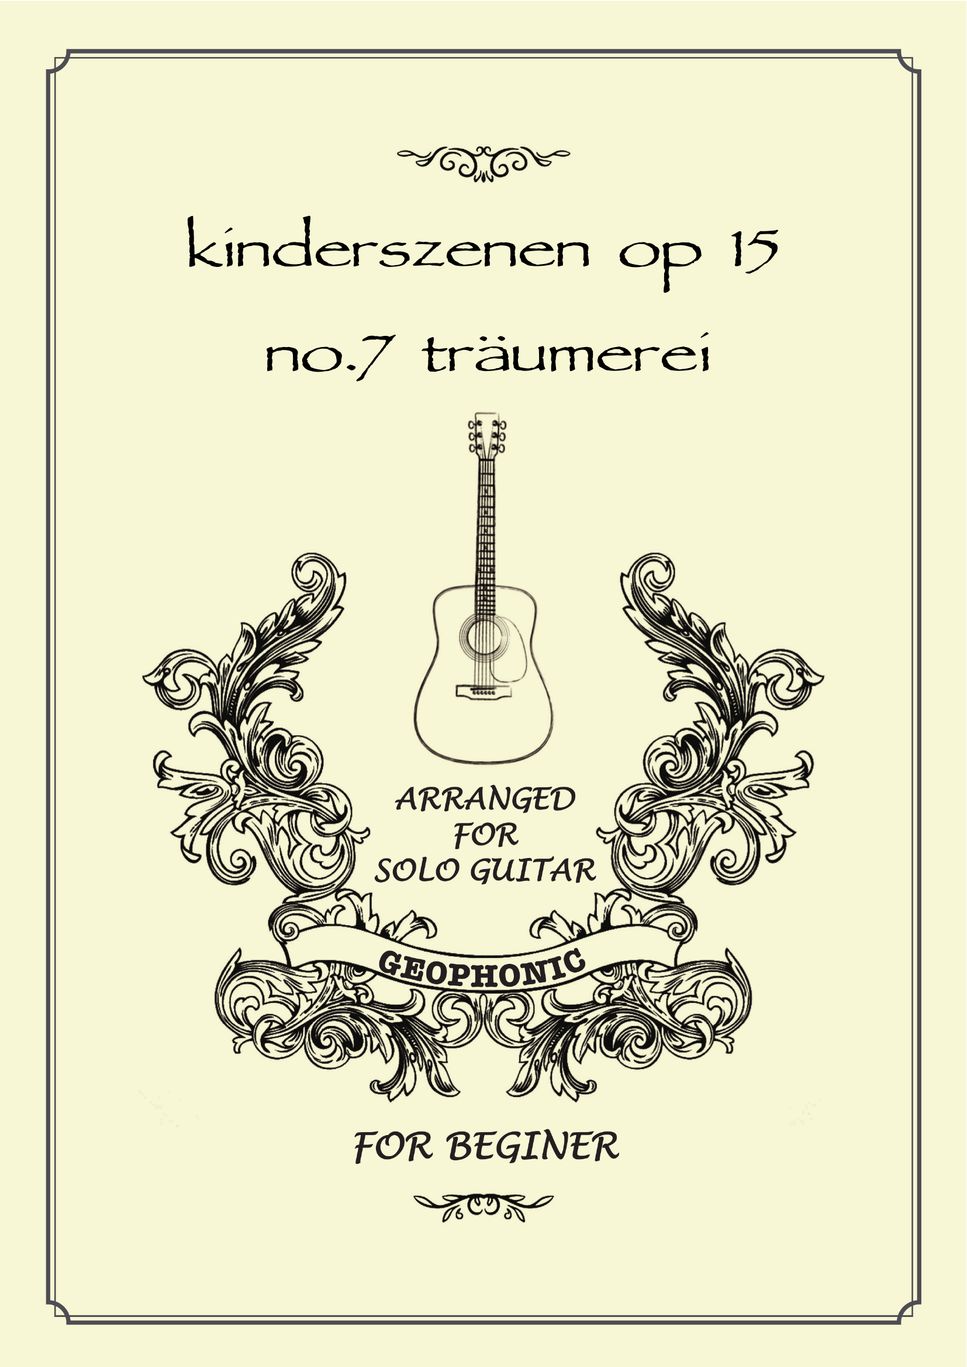 Robert Alexander Schumann - träumerei kinderszenen op 15 no.7 by GEOPHONIC